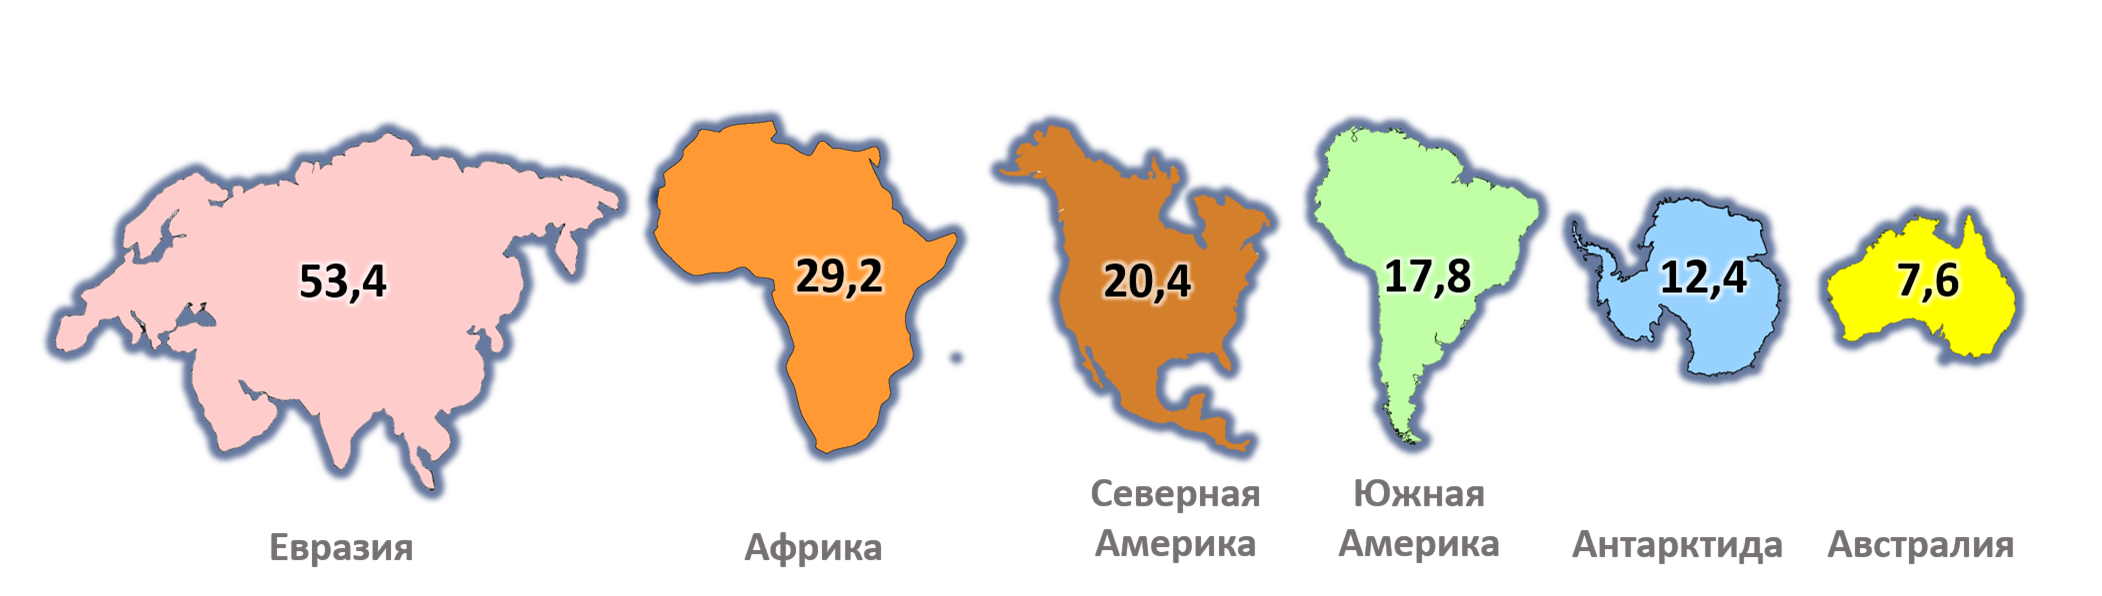 Евразия Африка Северная Америка Южная Америка Австралия Антарктида. Сравнение размеров материков на карте. Размеры материков по площади. Место занимаемое евразией среди материков